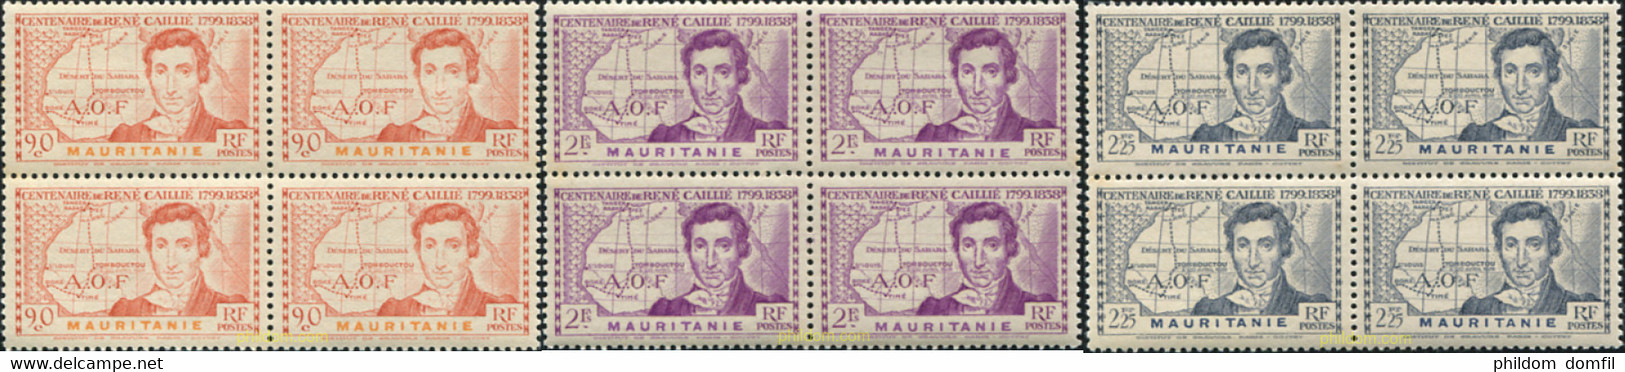 608273 MNH MAURITANIA 1939 1939 I CENTENARIO DE LA MUERTE DE RENÉ CAILLIE 1799-1838 EXPLORADOR Y NAVEGANTE - Used Stamps